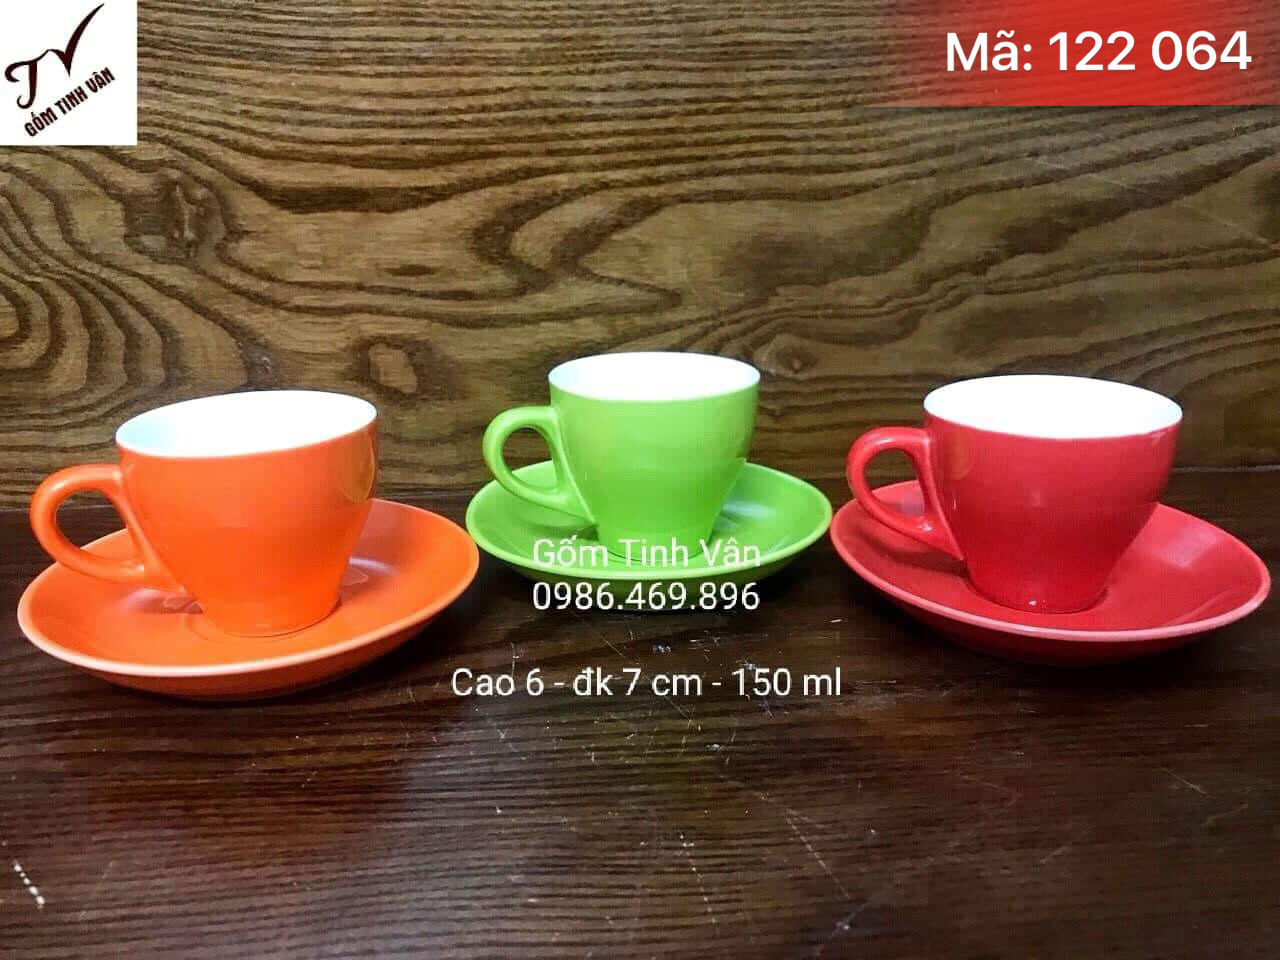 Bộ 3 ly cafe và đĩa kê, mã 122064, men màu, cam, xanh cốm, đỏ, cao 6 cm dk 8 cm, dung tích 150ml, cafe capuchino, espresso, in logo nhà hàng, gốm sứ bát tràng, tinh vân